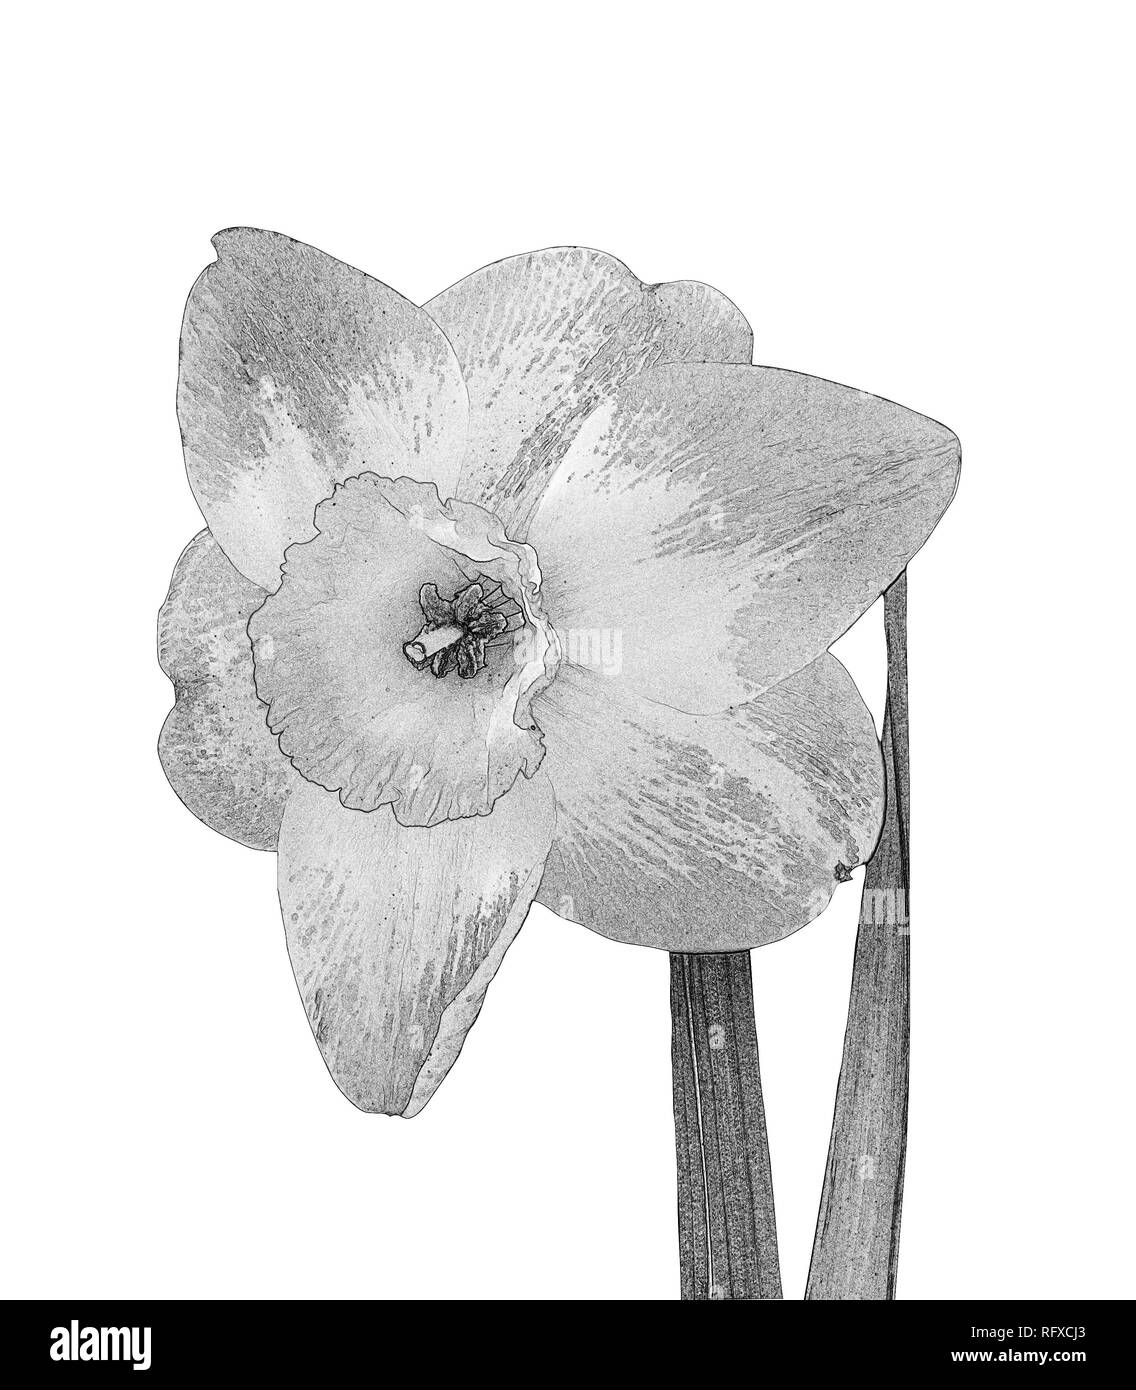 Fleurs de narcisses en noir et blanc isolé sur fond blanc Banque D'Images